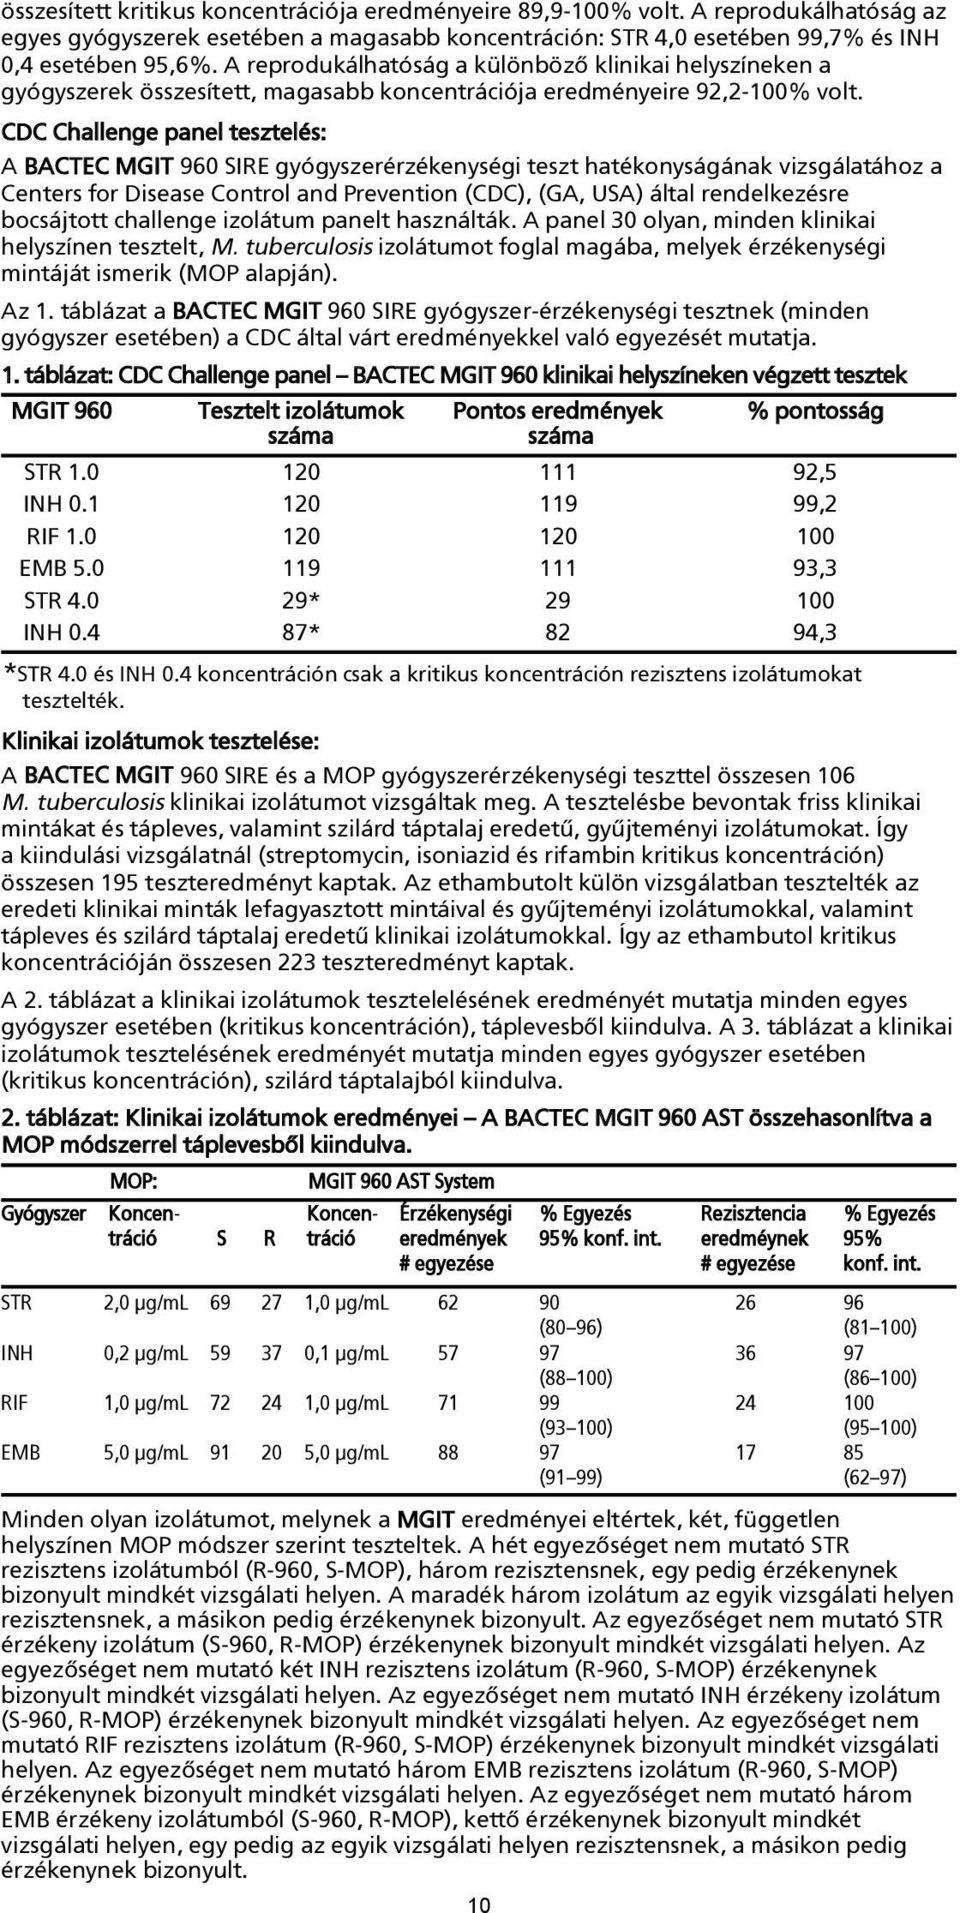 CDC Challenge panel tesztelés: A BACTEC MGIT 960 SIRE gyógyszerérzékenységi teszt hatékonyságának vizsgálatához a Centers for Disease Control and Prevention (CDC), (GA, USA) által rendelkezésre